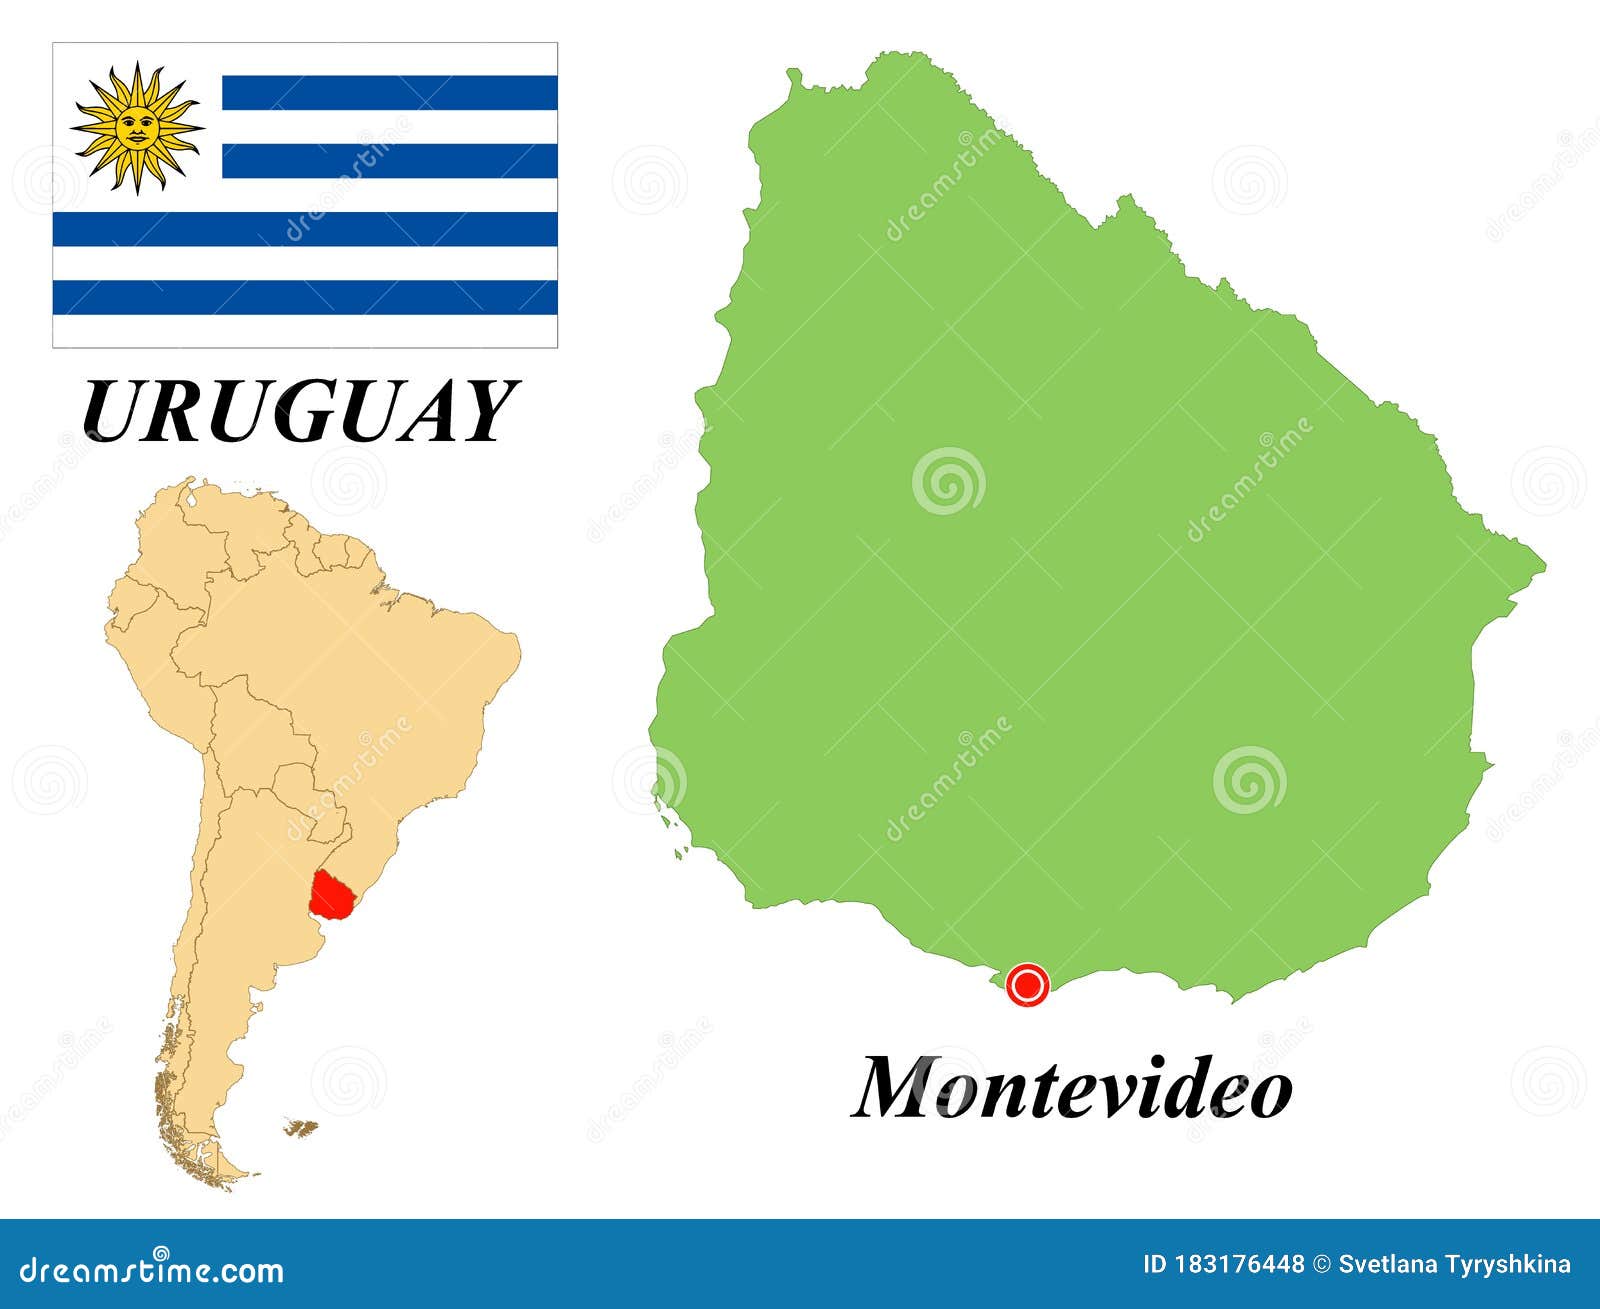 Уругвай столица на карте. Монтевидео столица Уругвая на карте. Восточная Республика Уругвай Монтевидео. Восточная Республика Уругвай на карте.